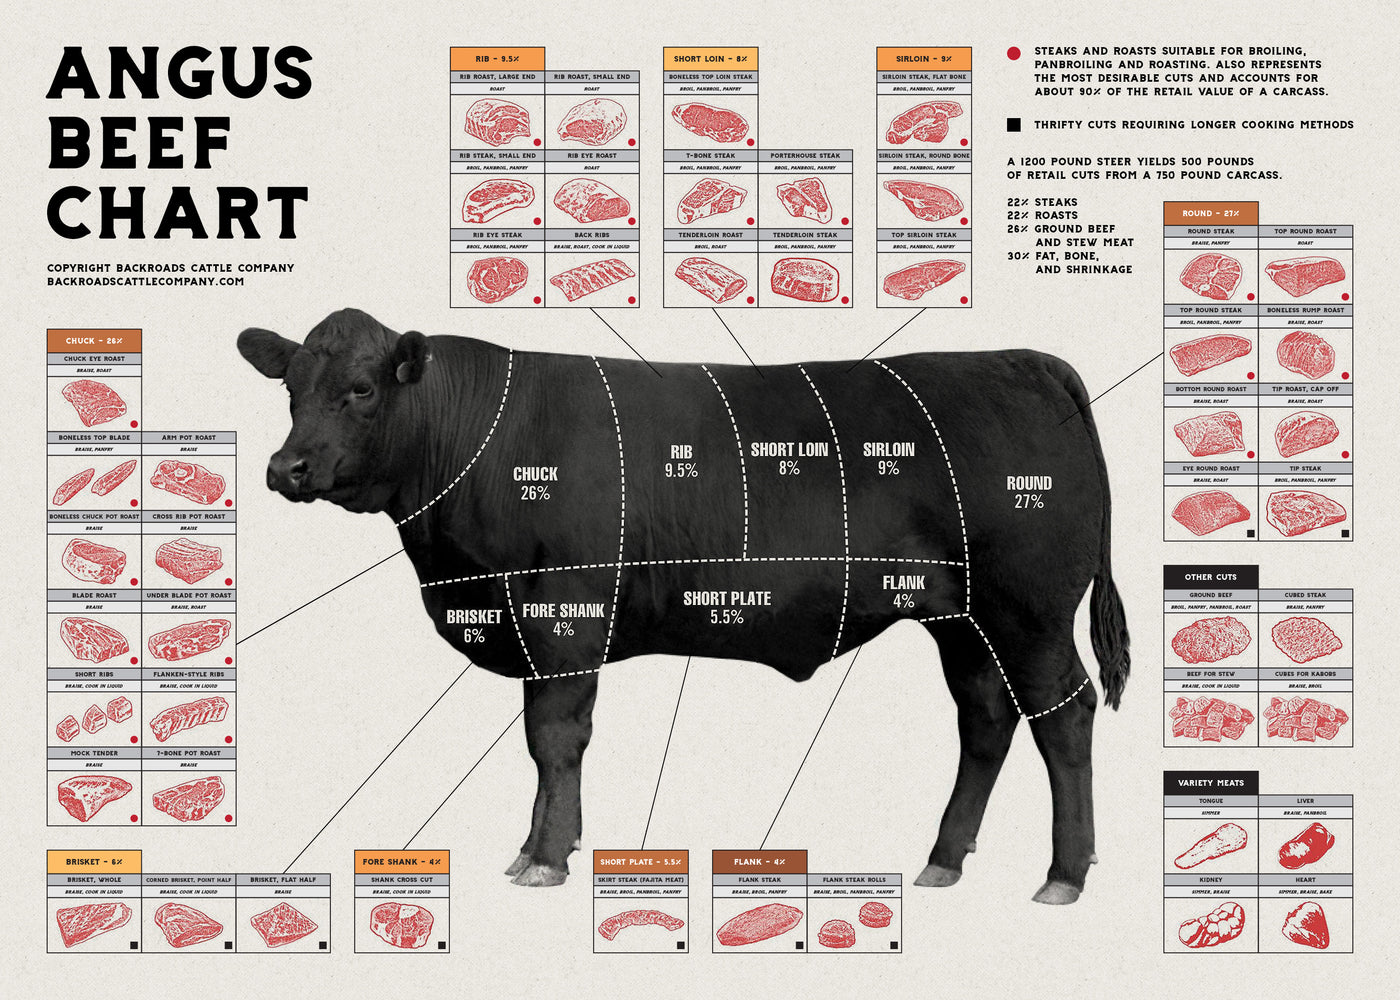 1/4 Steer - Bulk Beef (Most Practical)